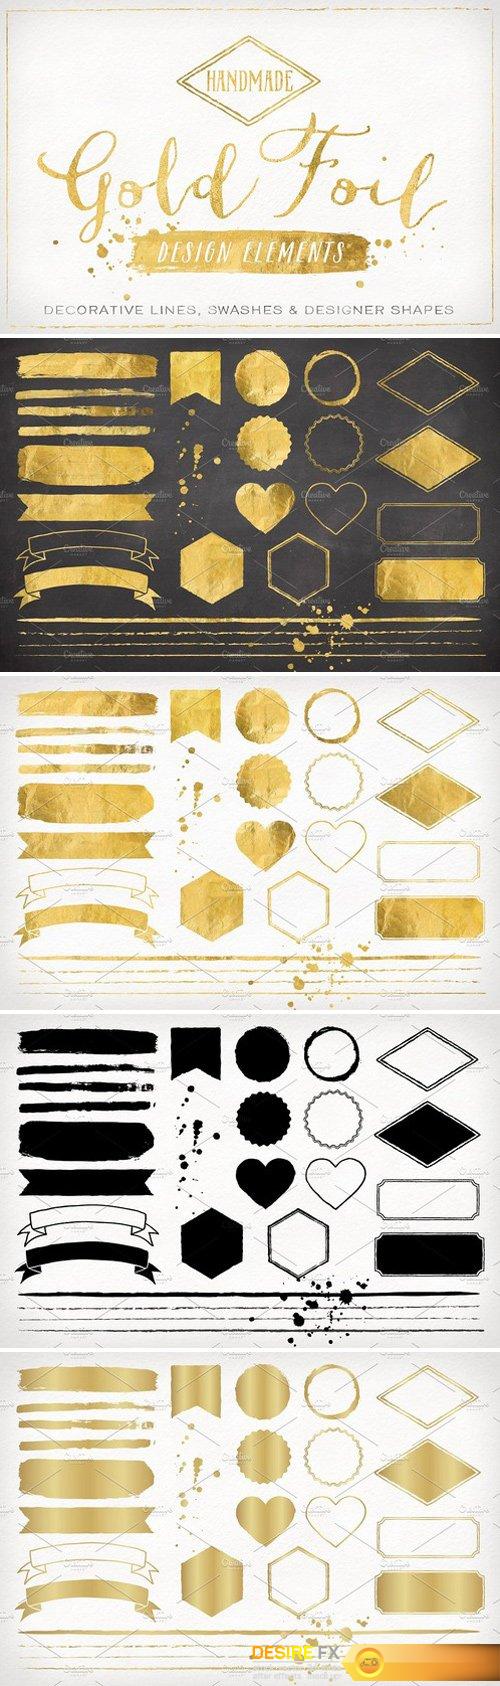 1509997454_gold-foil-design-elements-vectors-95566